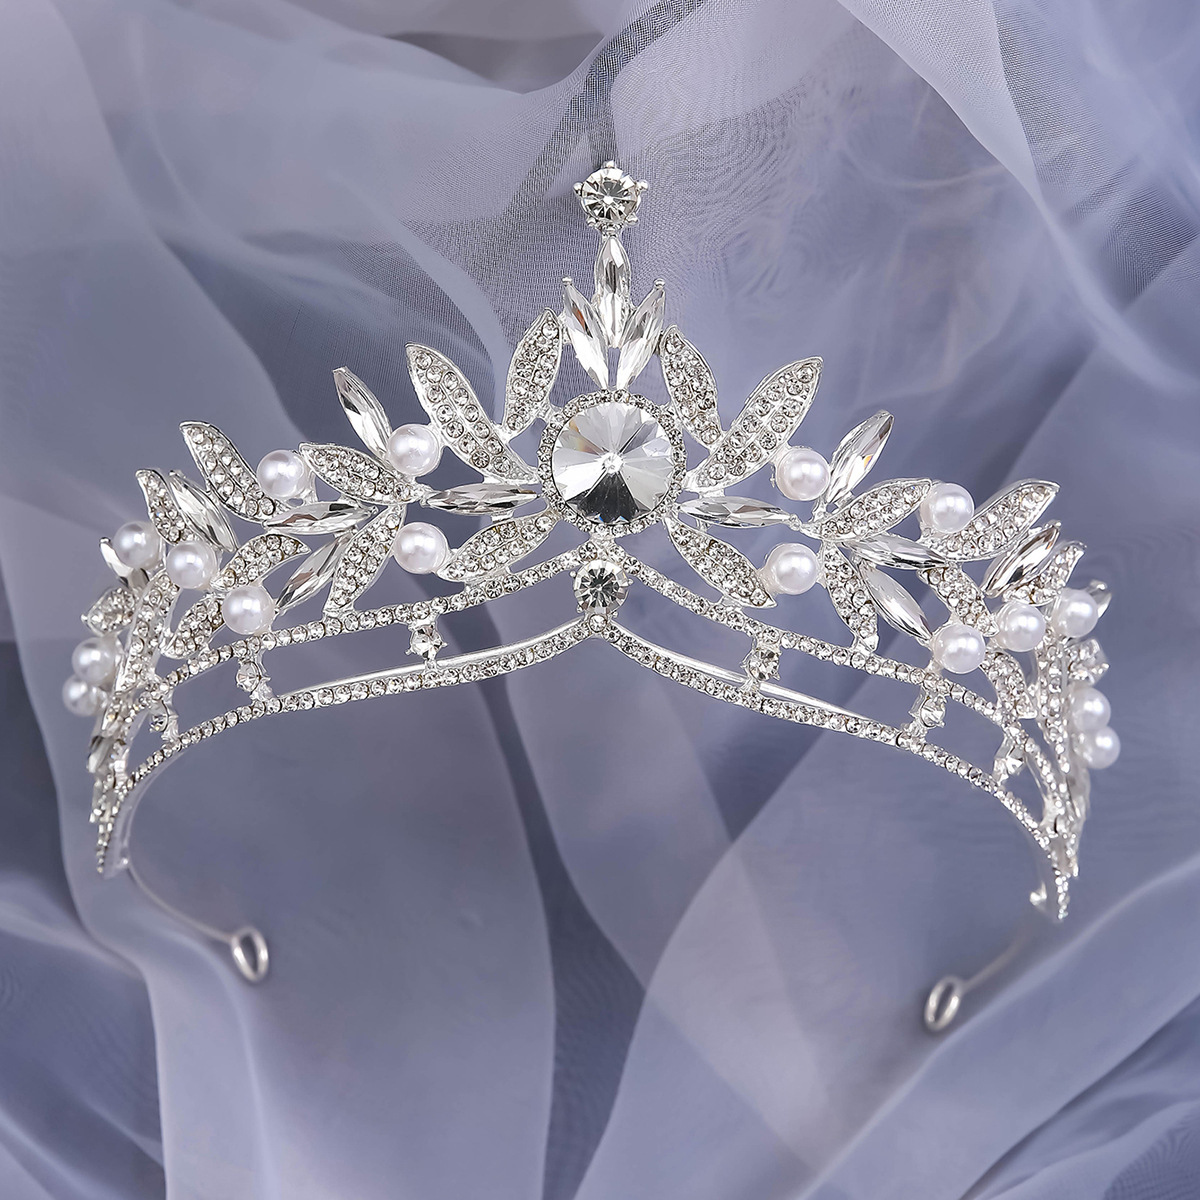 2:Fairy crown